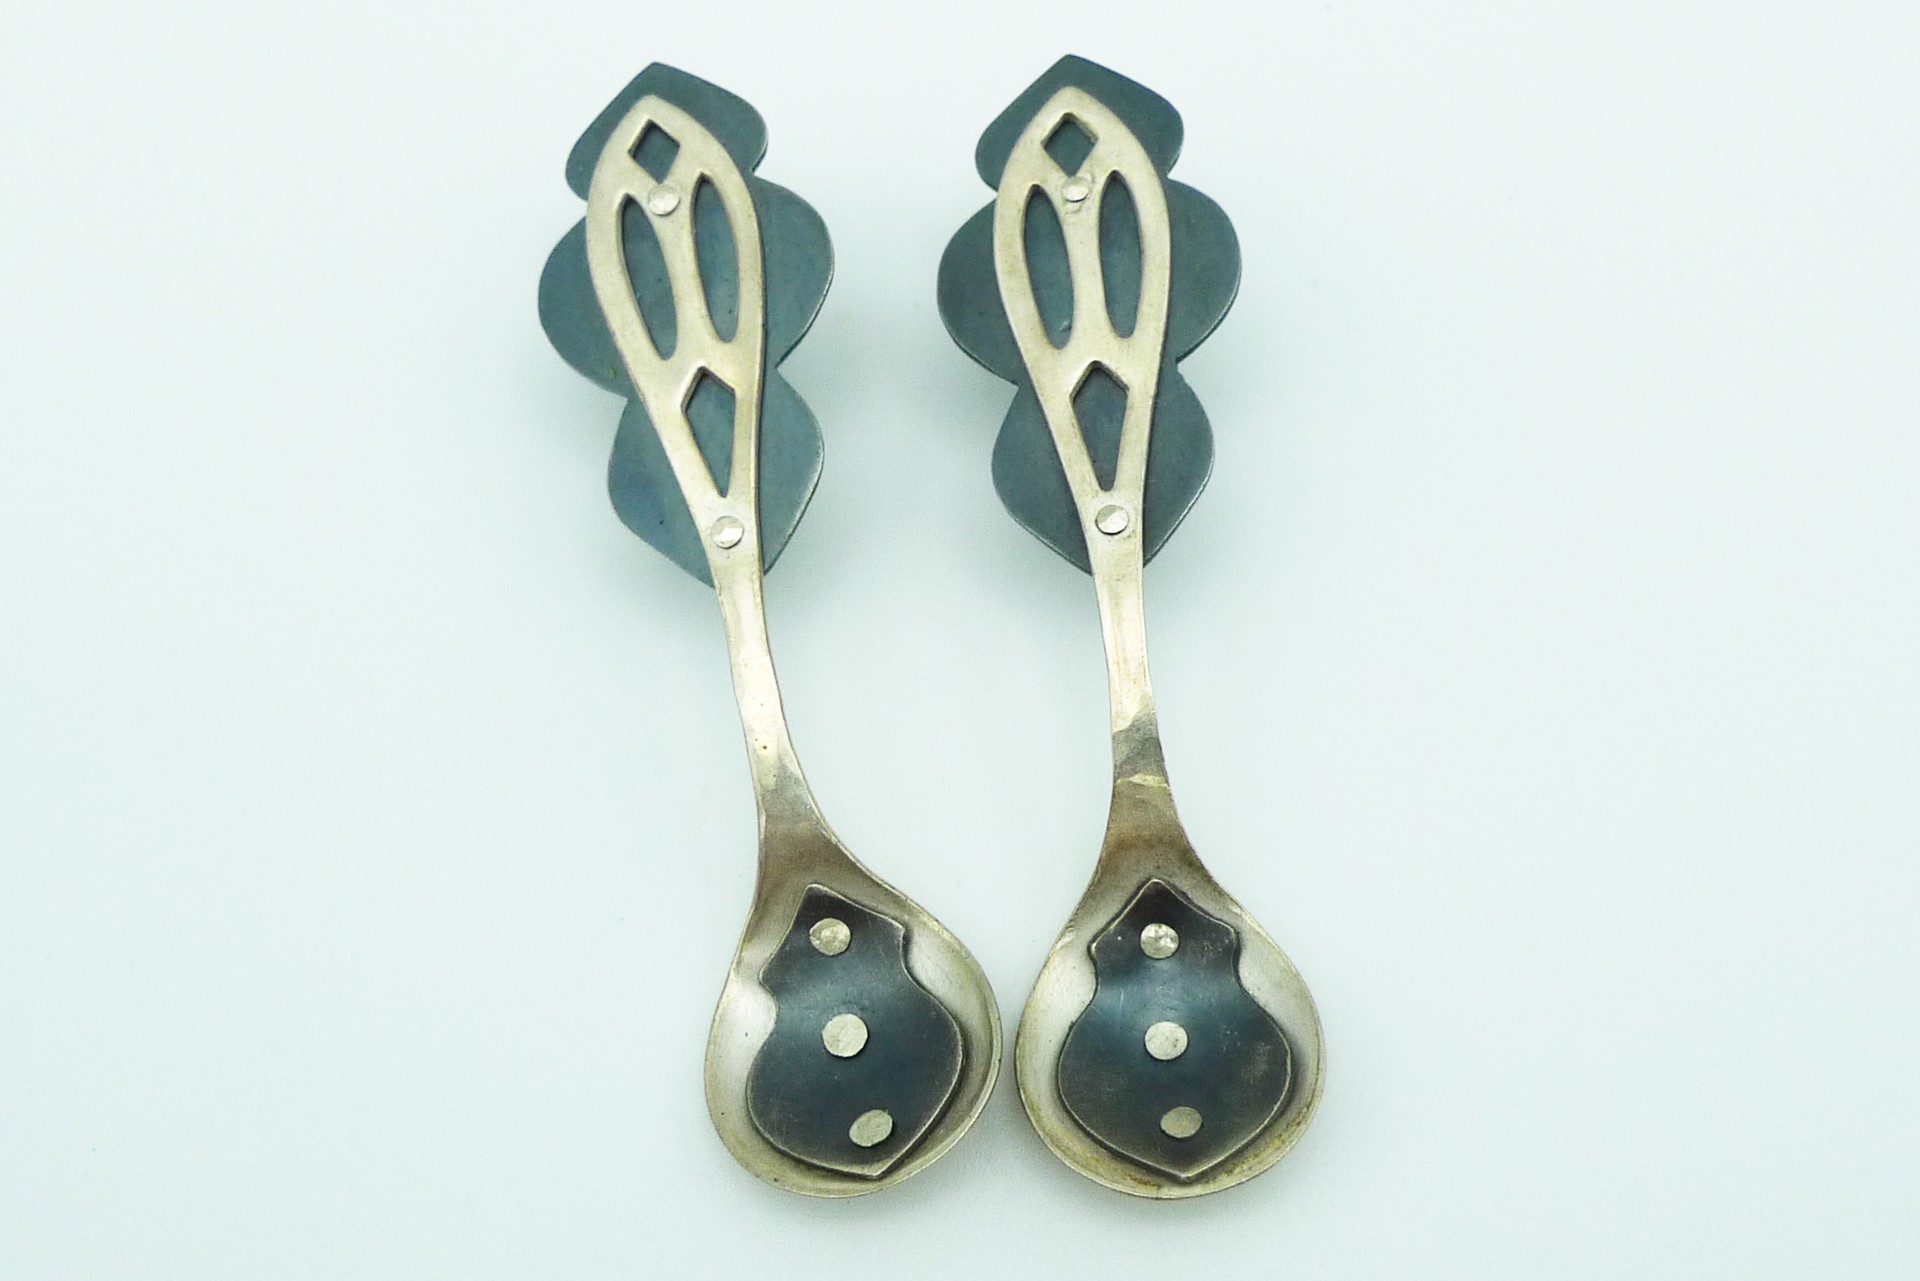 Salt Spoon Earrings by Alison L. Bailey